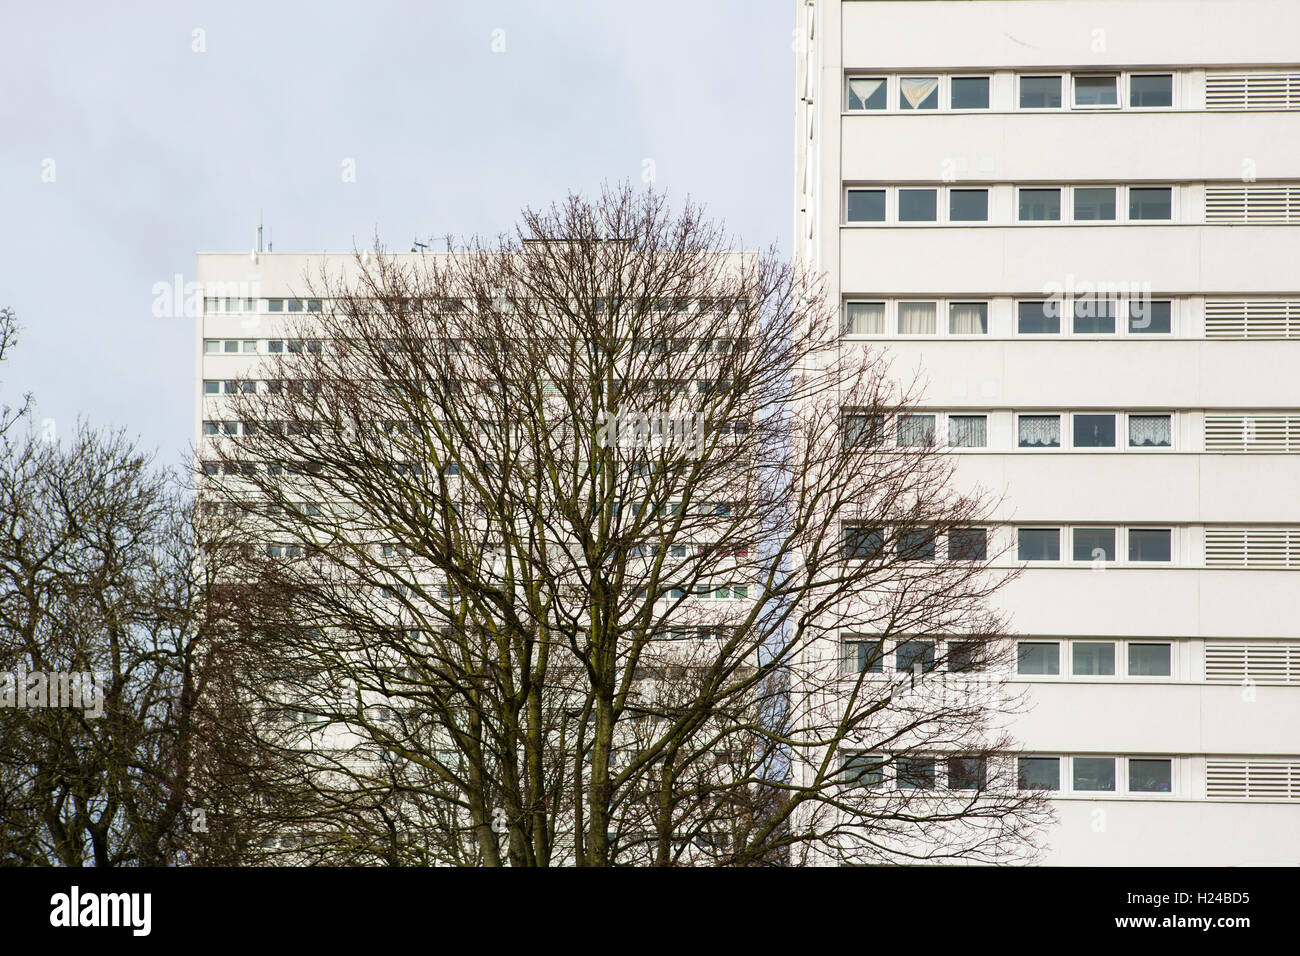 Grand bloc d'appartements à demi caché derrière un arbre sans feuilles au centre d'une grande ville au Royaume-Uni. Banque D'Images